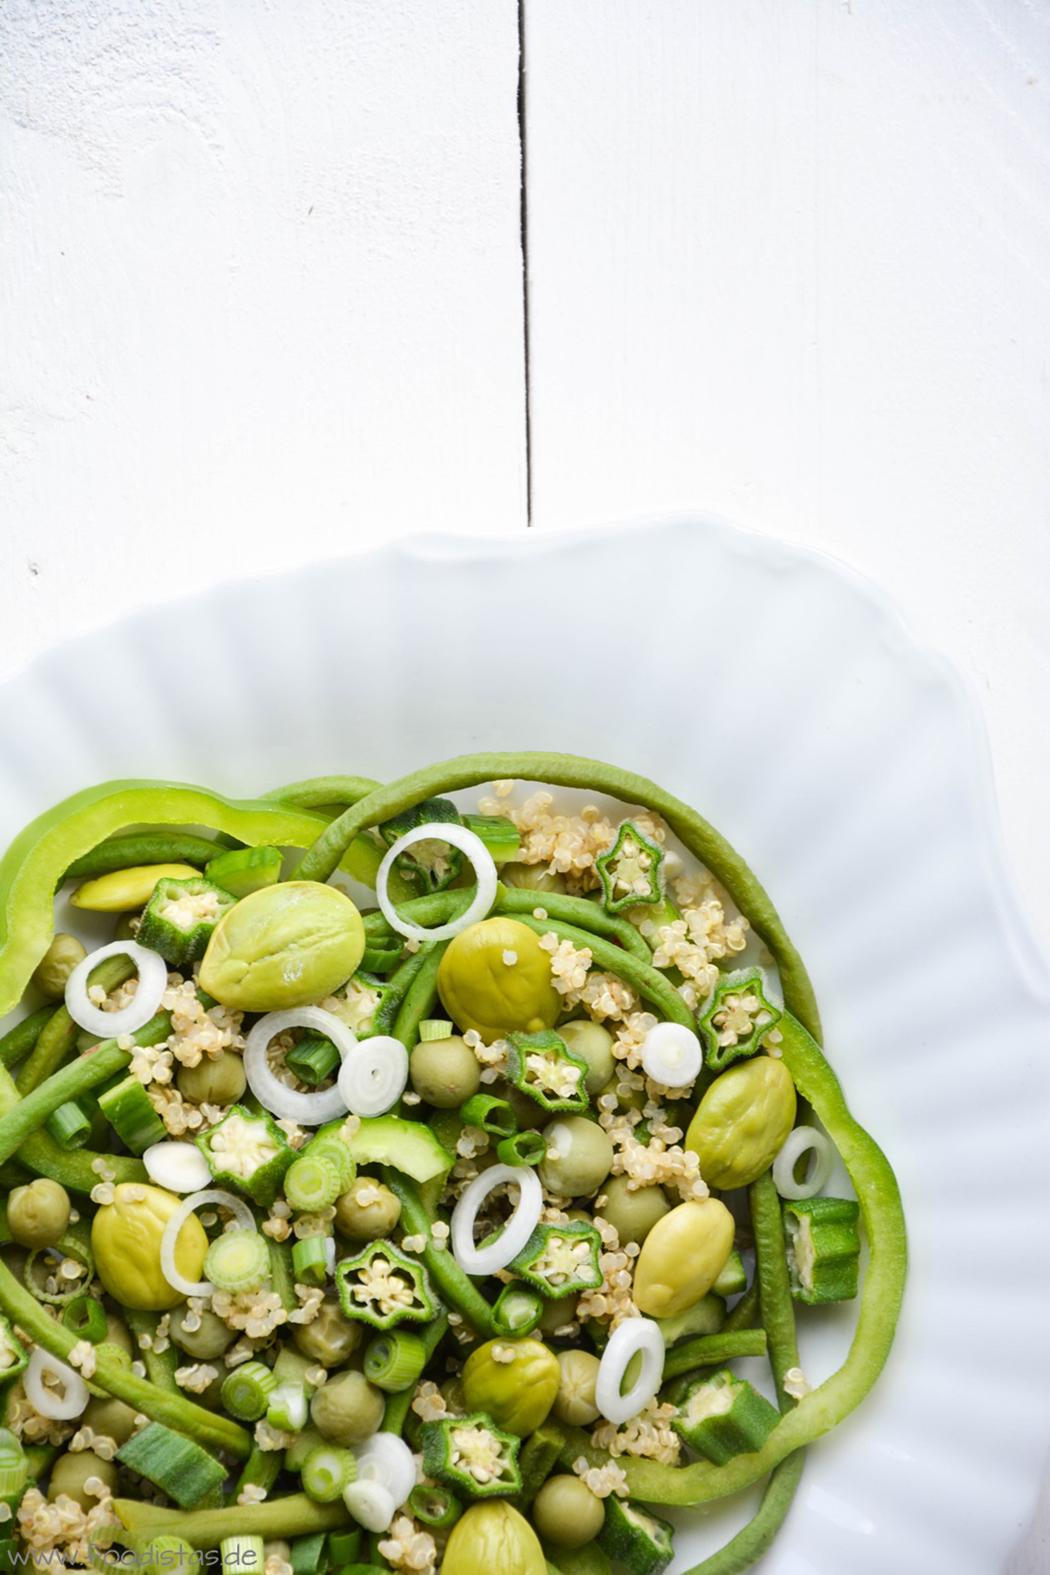 #SuperfoodSamstag mit einem Rezept für einen grünen Superfood-Salat mit Quinoa von den Foodistas | #feiertaeglich